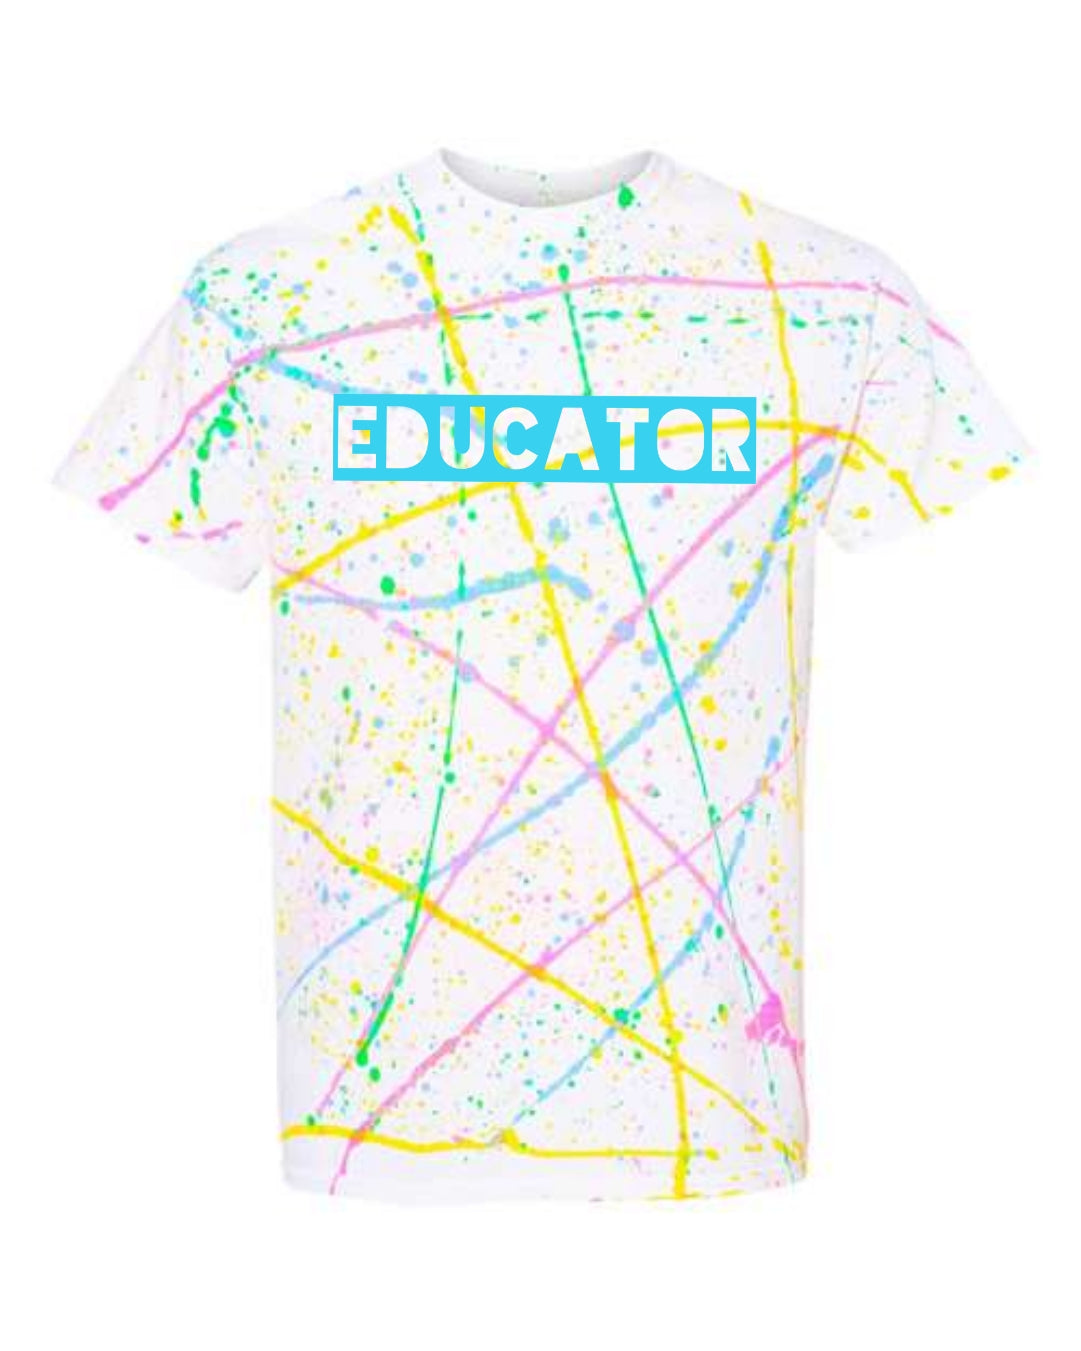 Educator Tshirt Color Splash